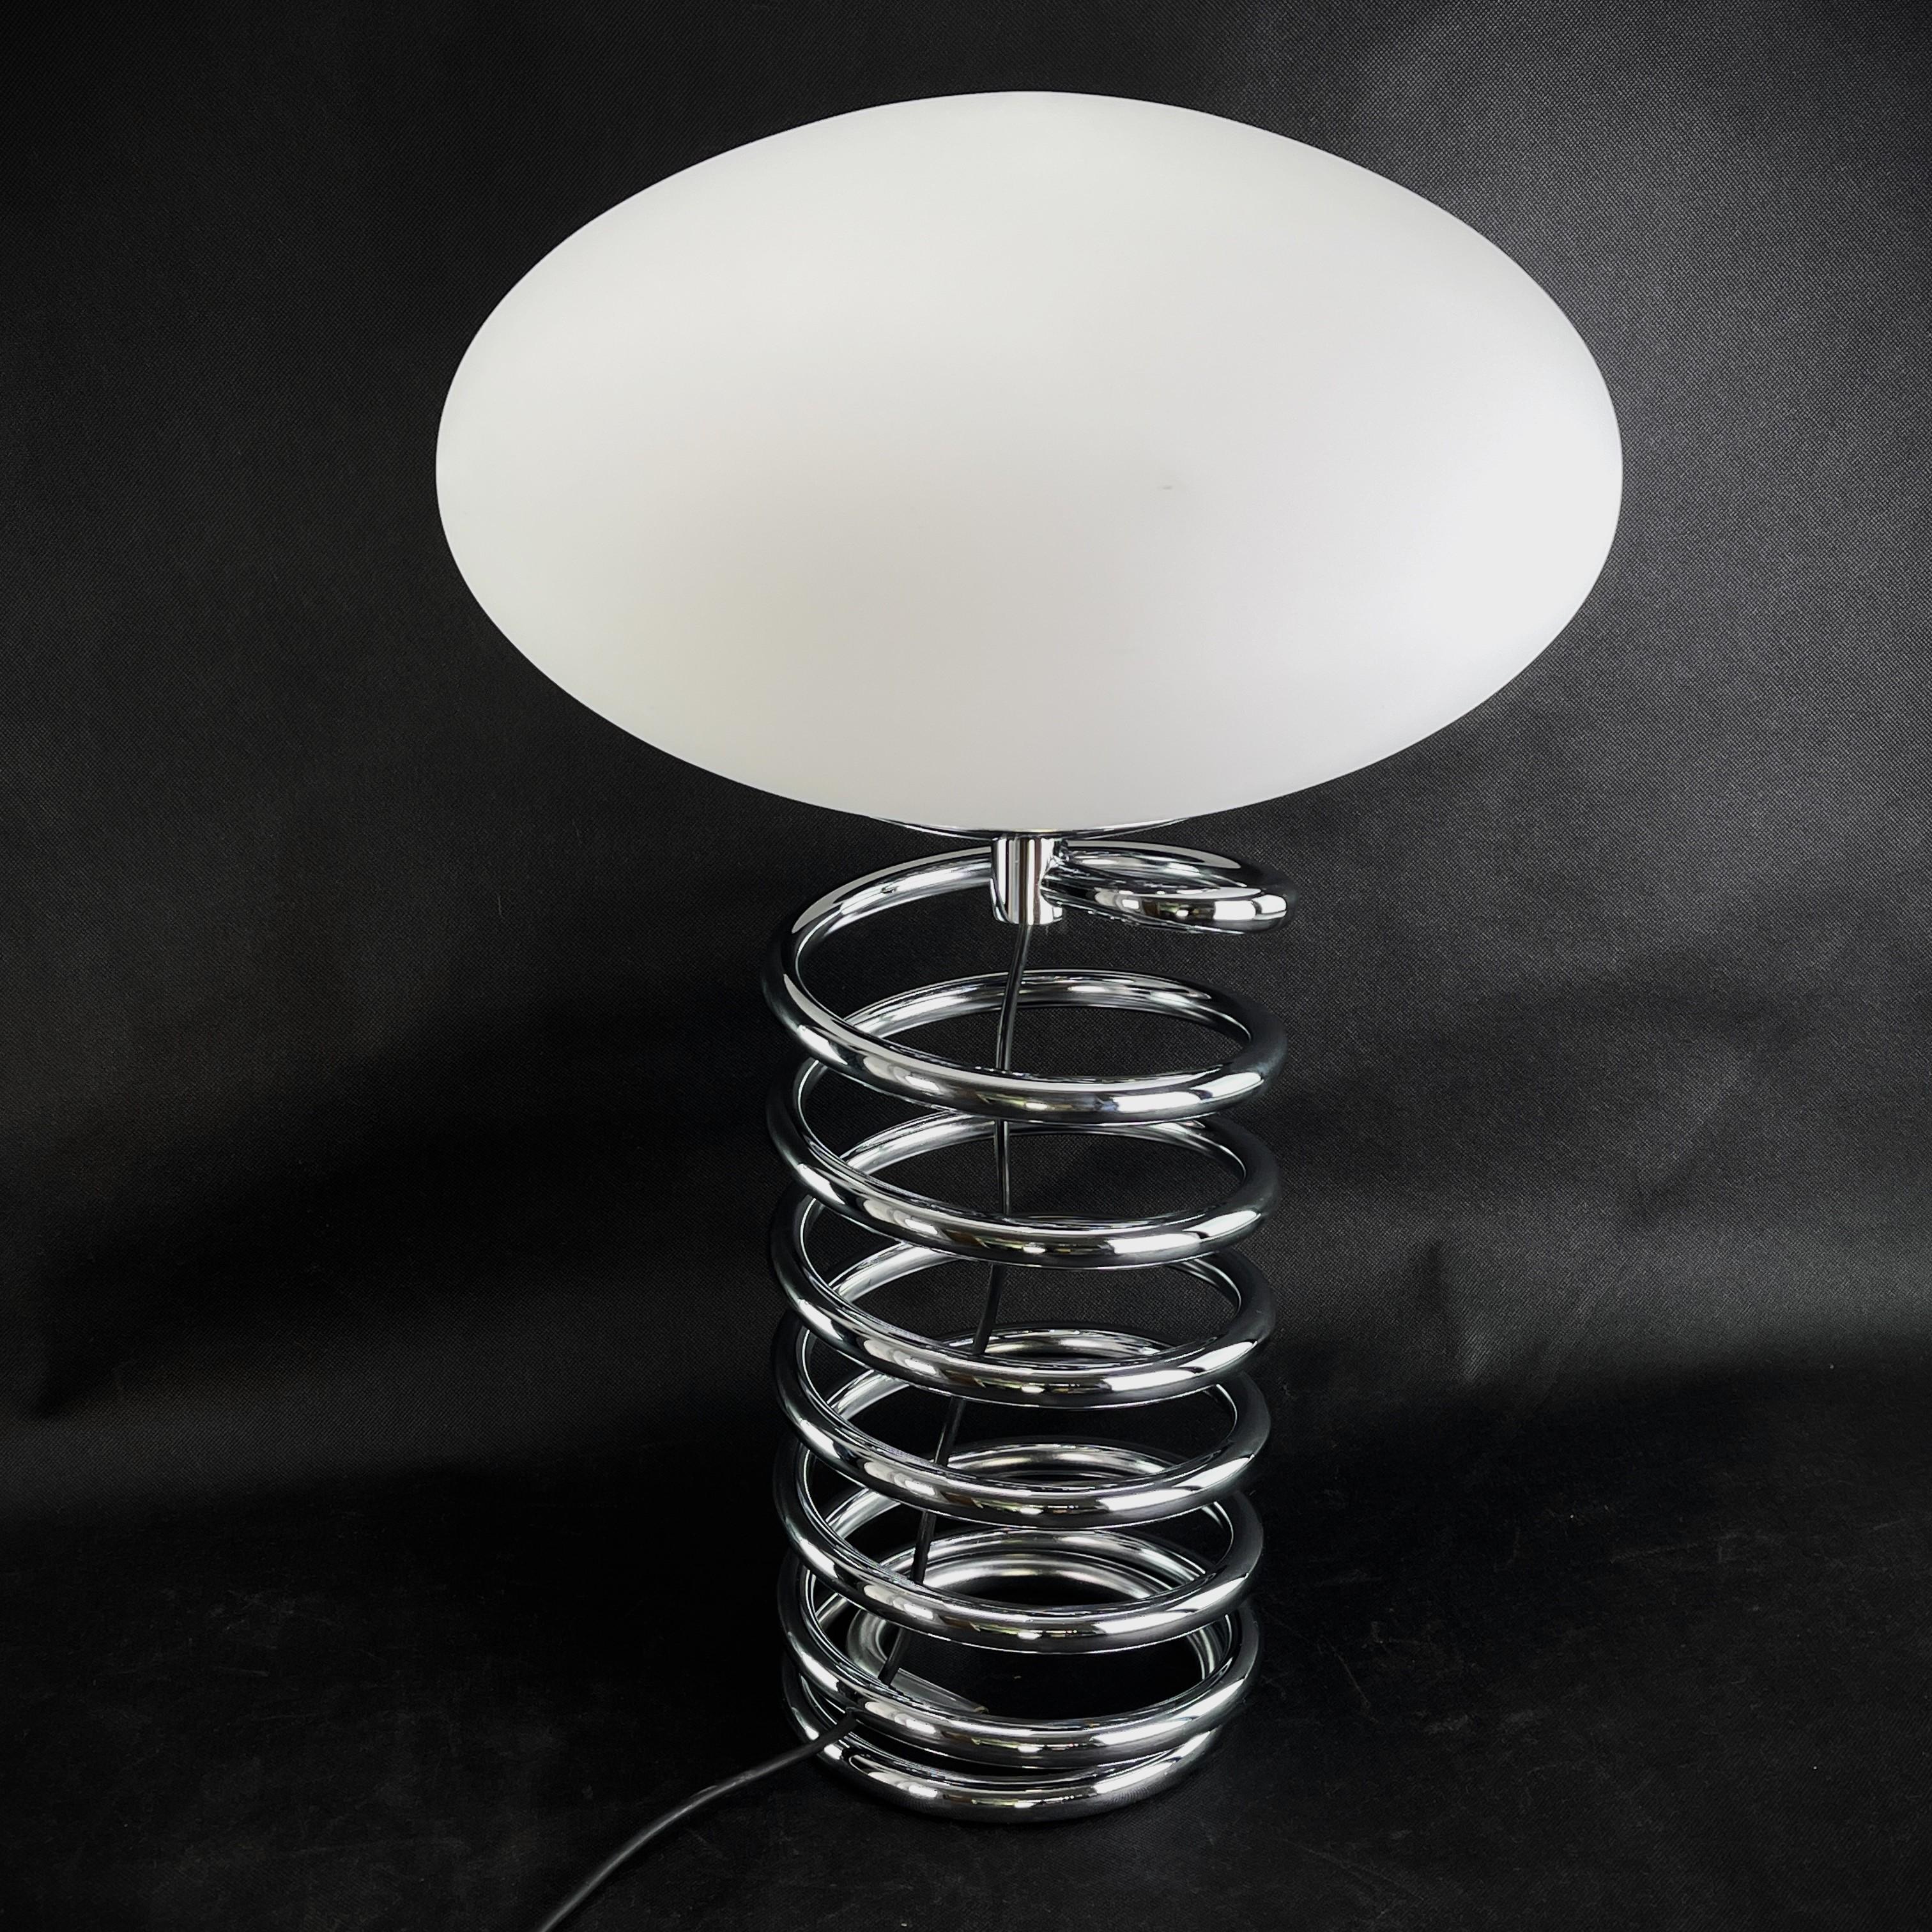 Lampadaire et lampe à poser d'Ingo Maurer - années 1970

La rare lampe à spirale est un véritable classique du design des années 70. La lampe de salon d'Ingo Maurer diffuse une lumière agréable. La lampe de table est rarement trouvée dans cet